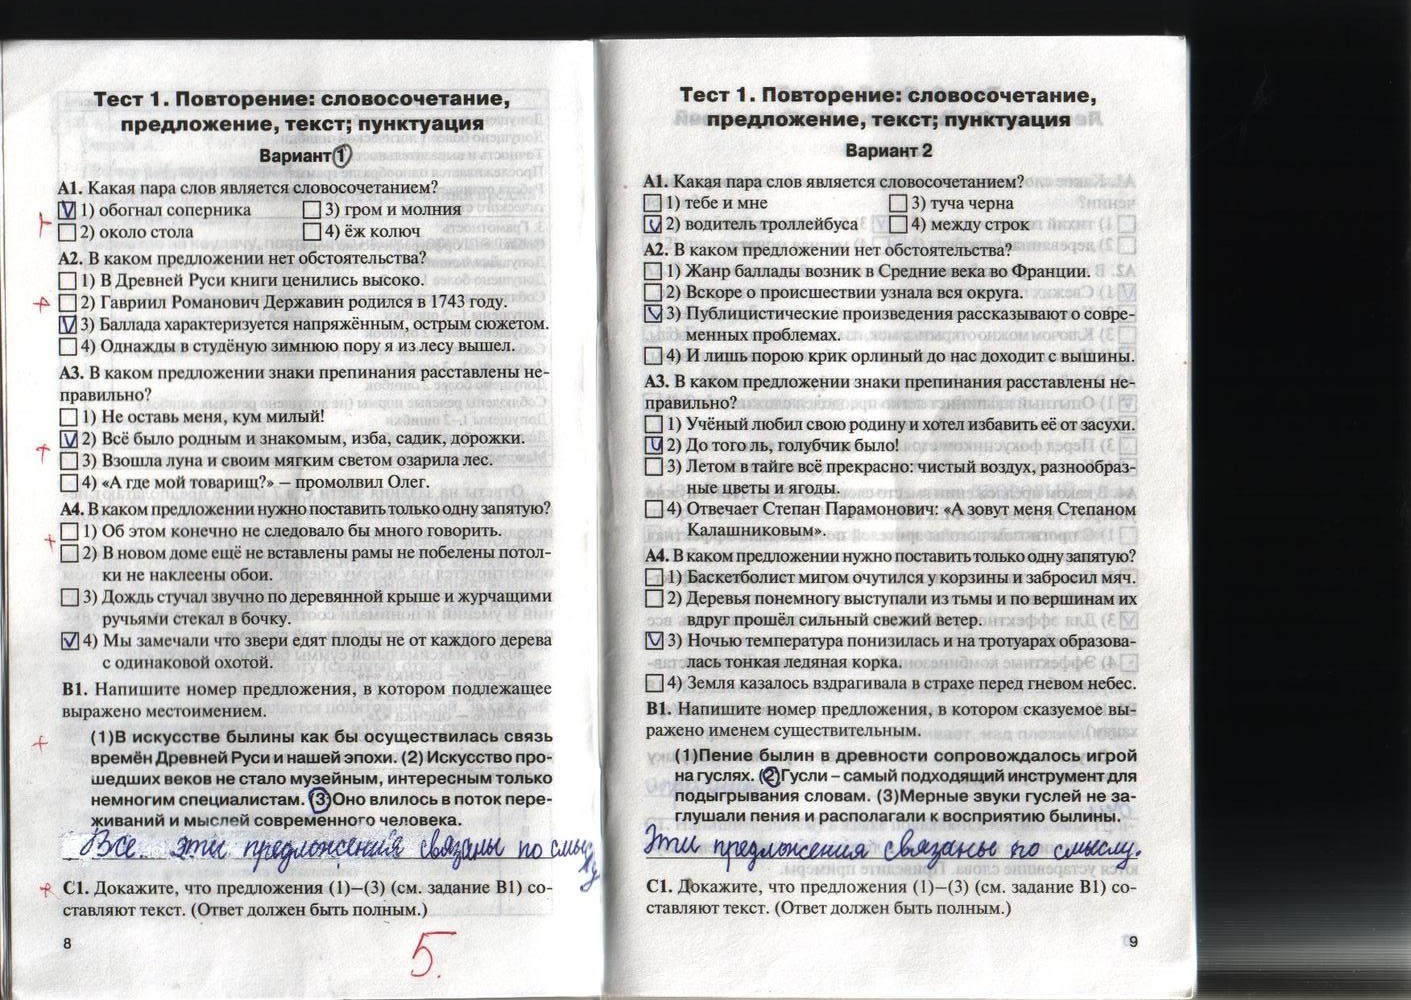 Контрольно-измерительные материалы, 7 класс, Егорова Н.В., 2012, задание: стр. 8-9